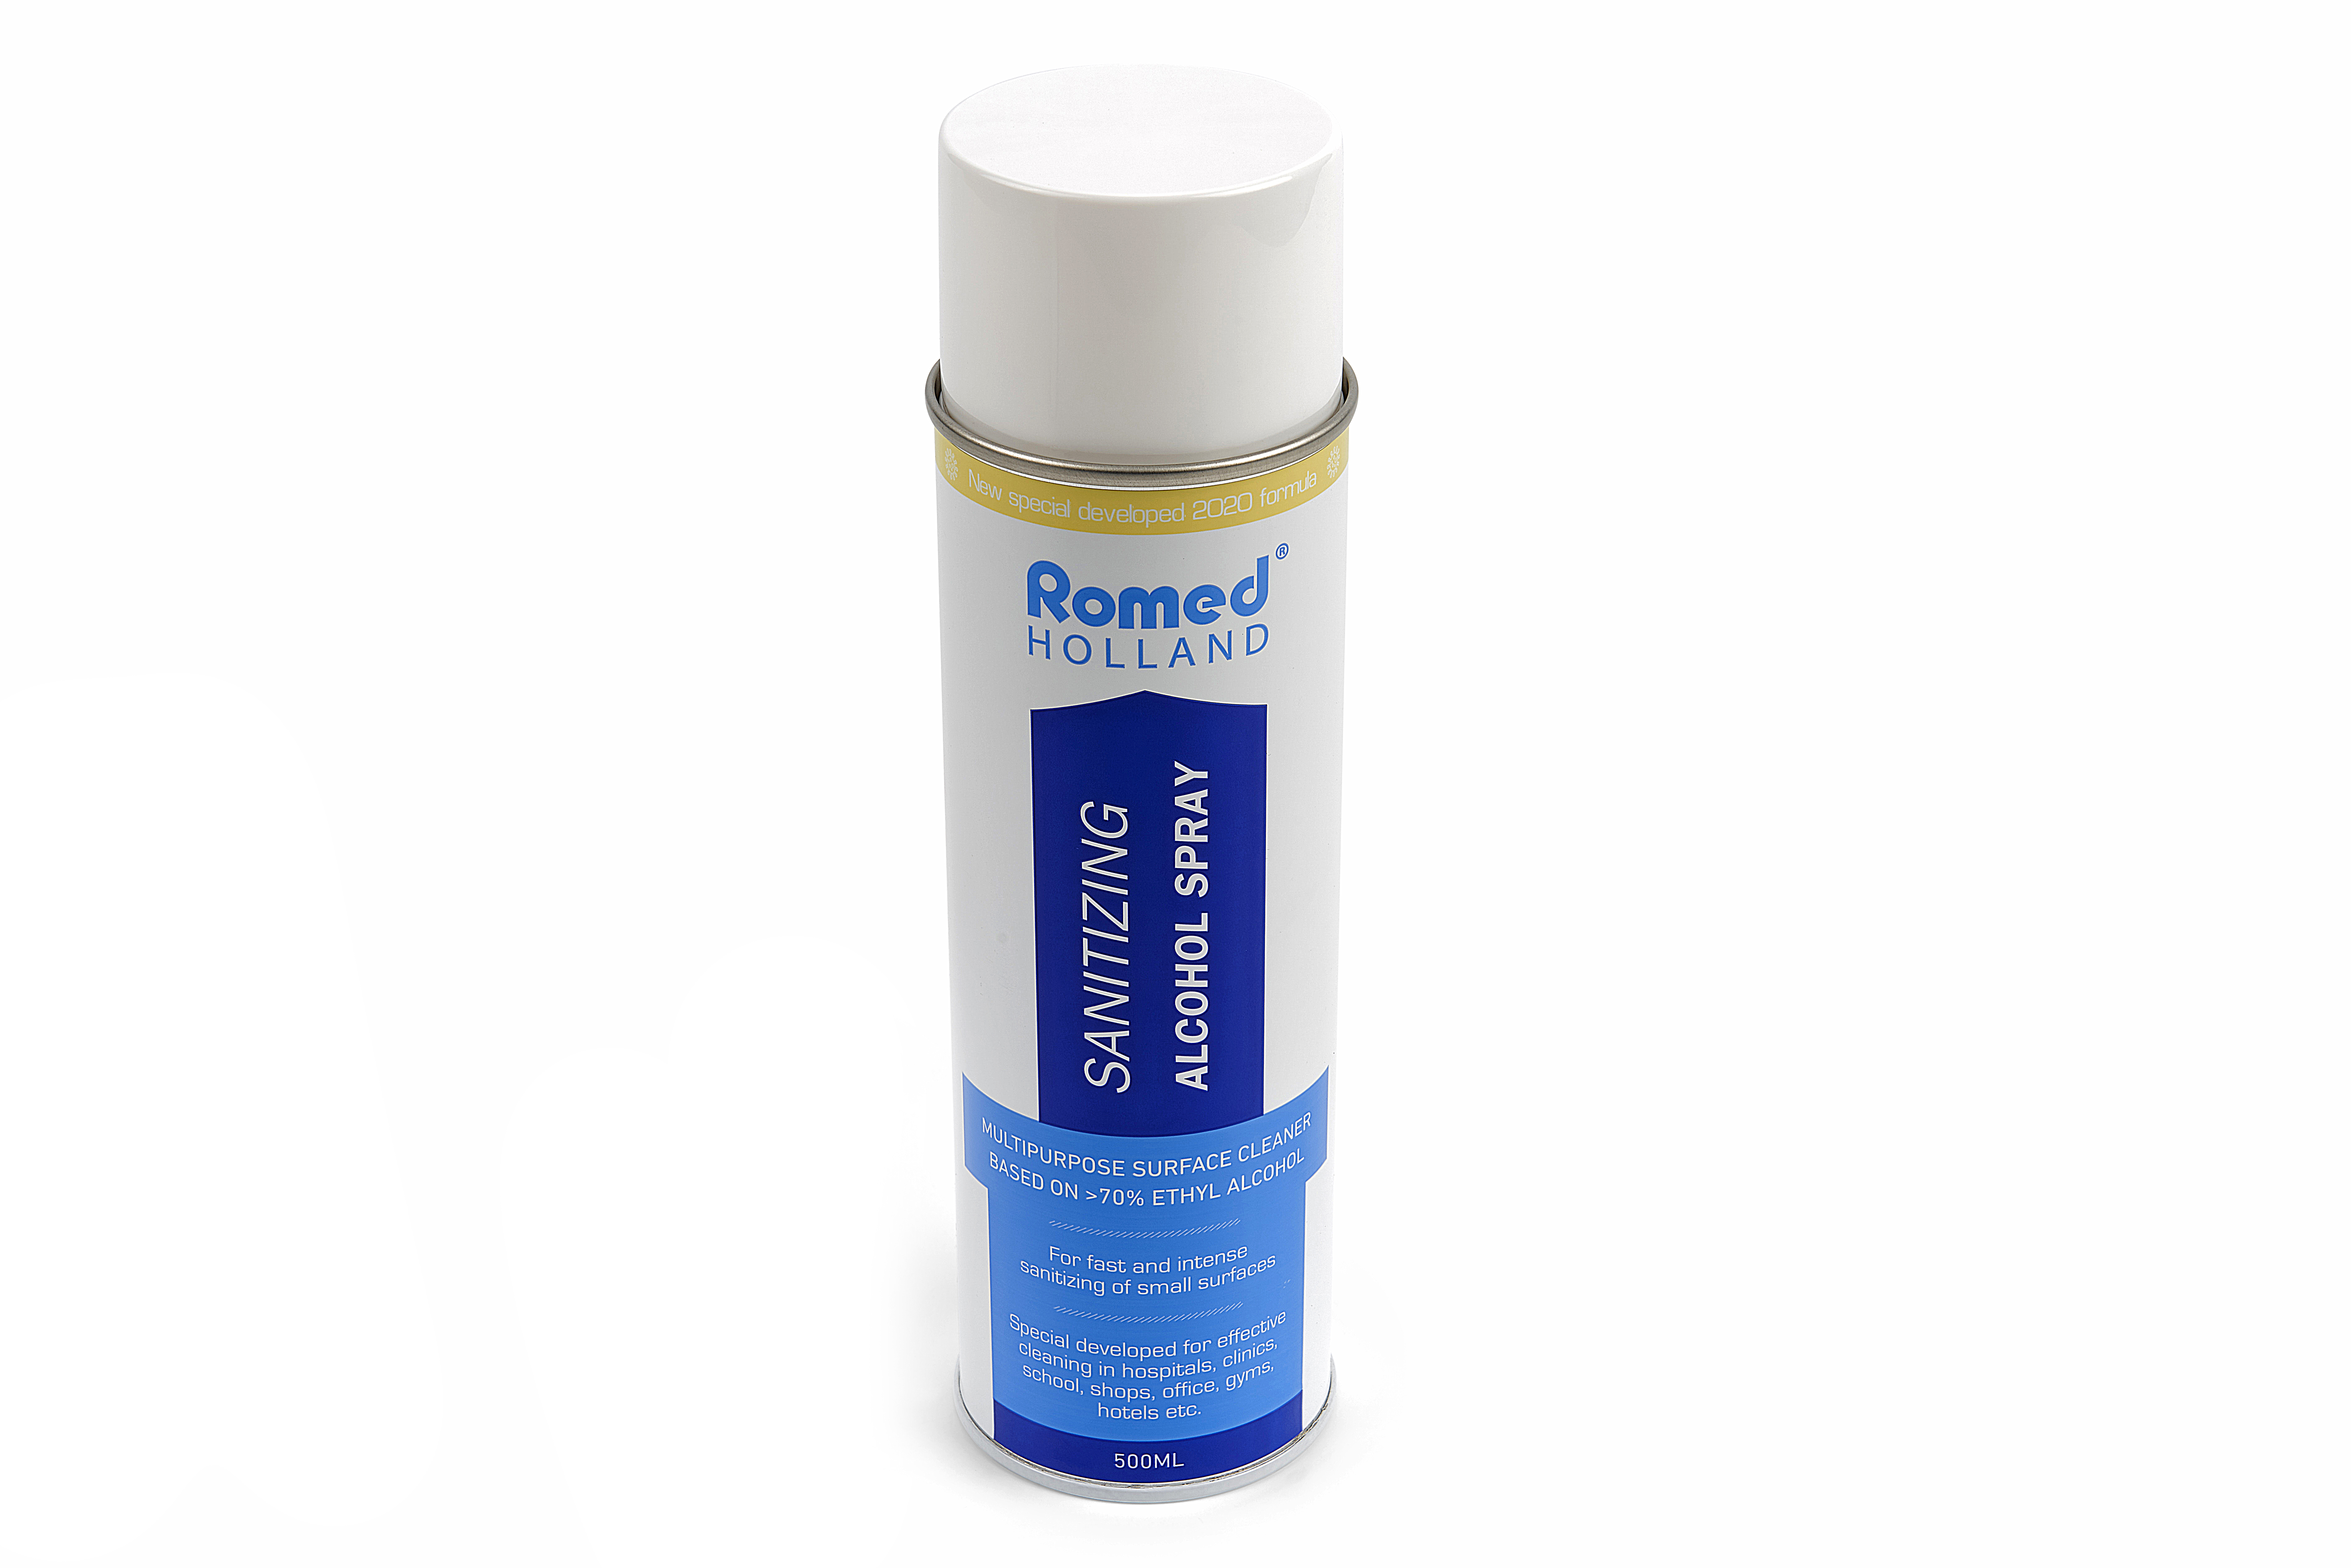 COV19-SPRAY Spray nettoyant Romed pour une nettoyer rapide et intense des petites surfaces. 12 aérosols de 500 ml, dans un carton.